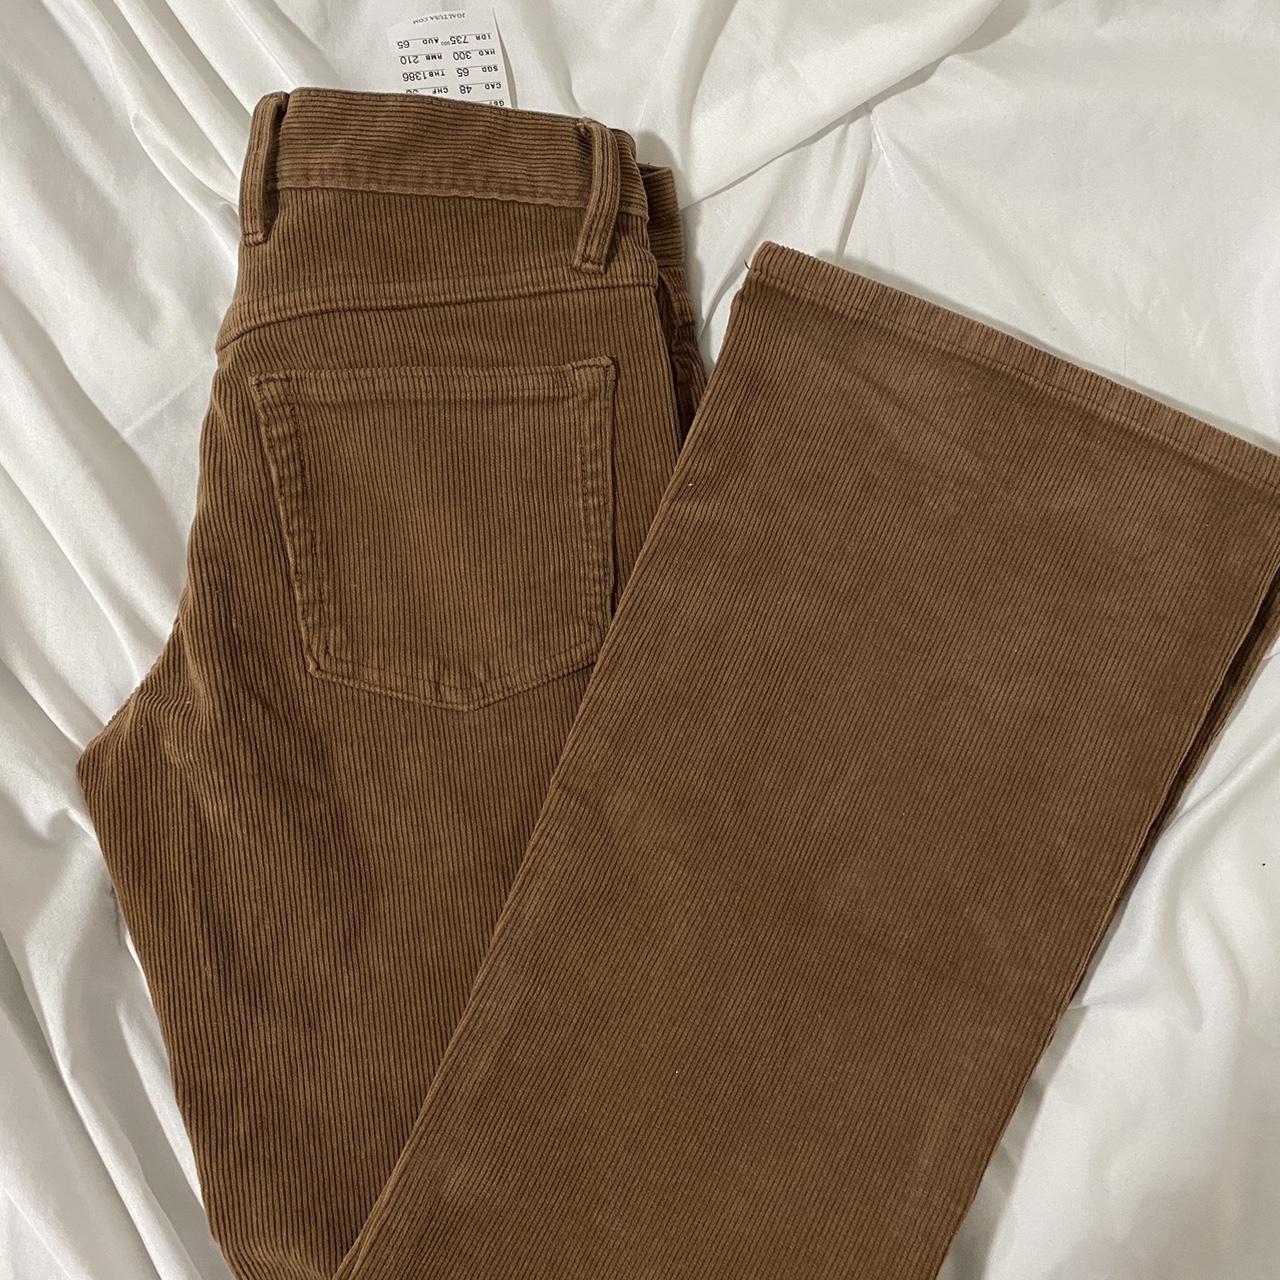 reddish brown corduroy pants - Depop